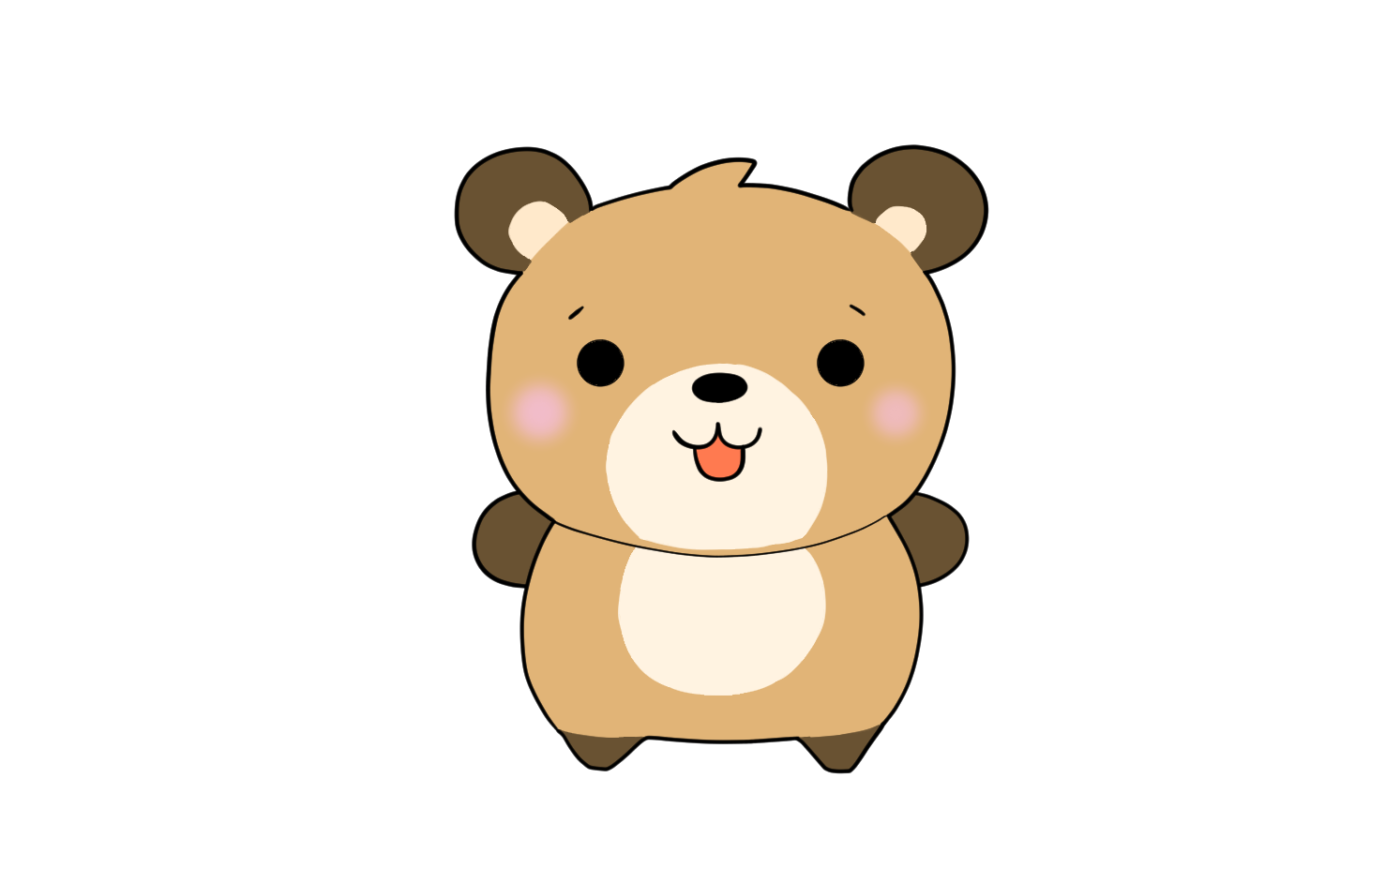 cute bear